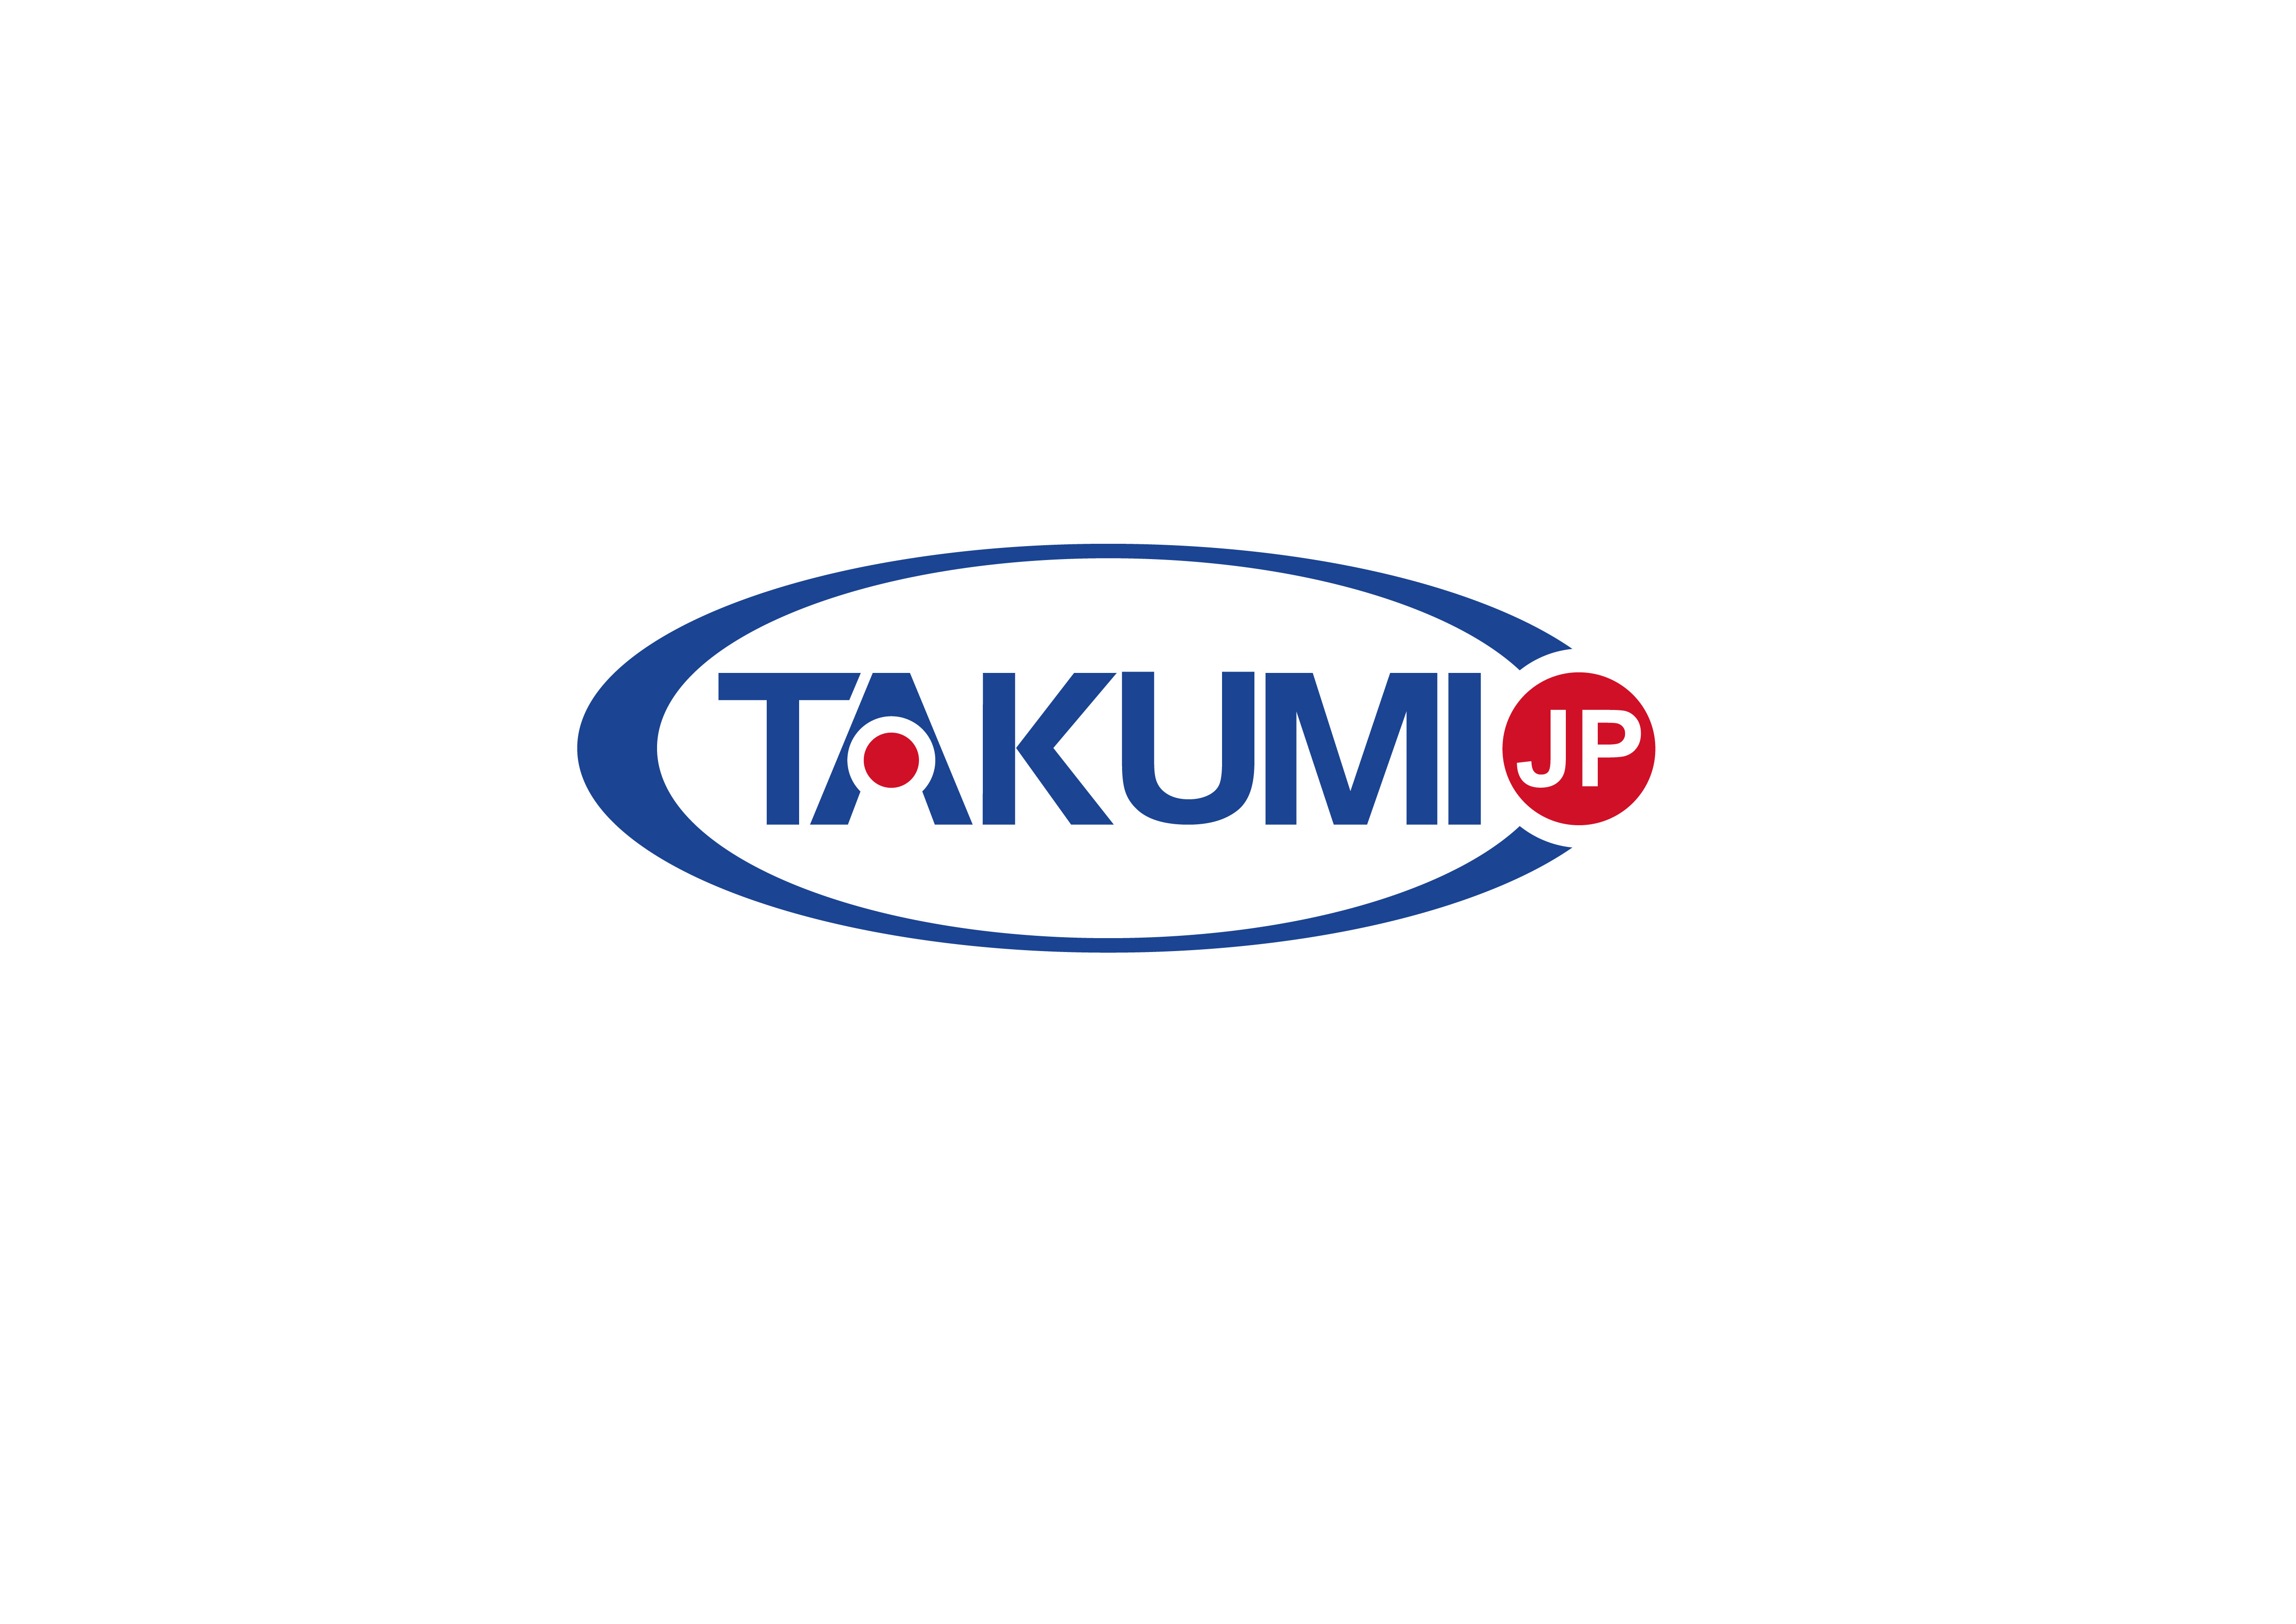 последний случай компании о Takumi теперь ищет глобальный исключительный раздатчик.